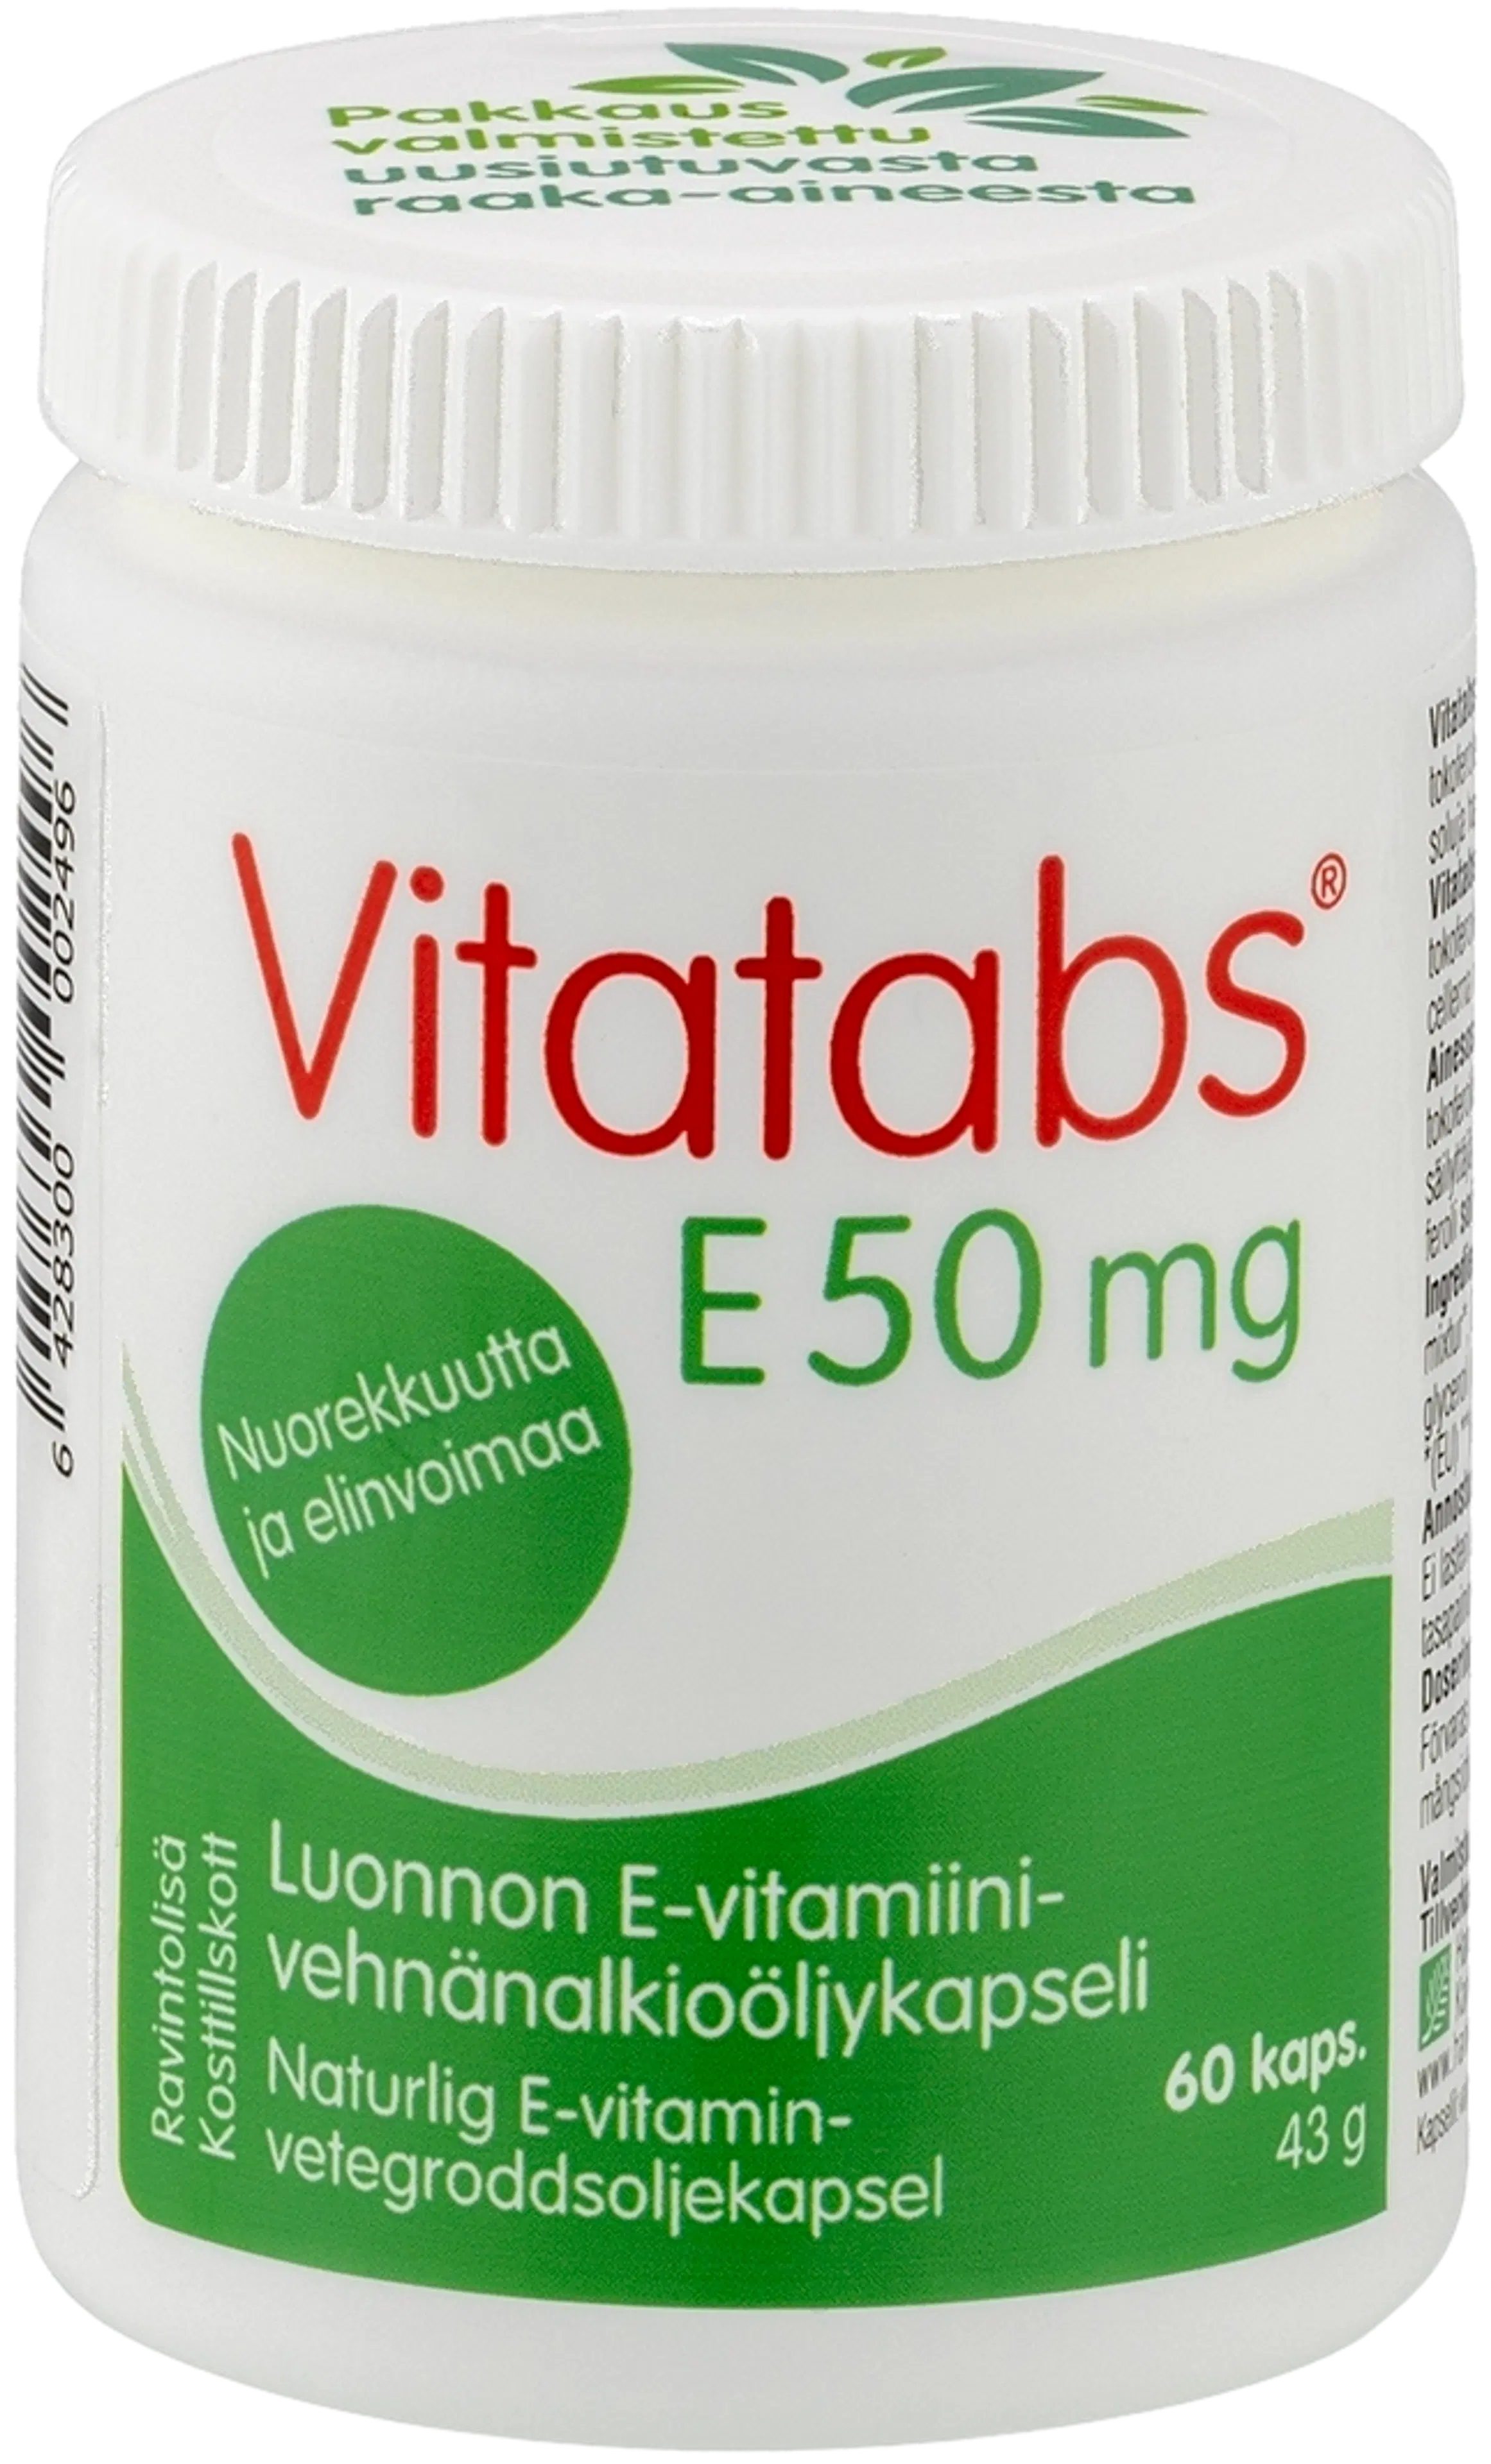 Vitatabs E 50 mg E-vitamiini-vehnänalkioöljykapseli 60 kaps